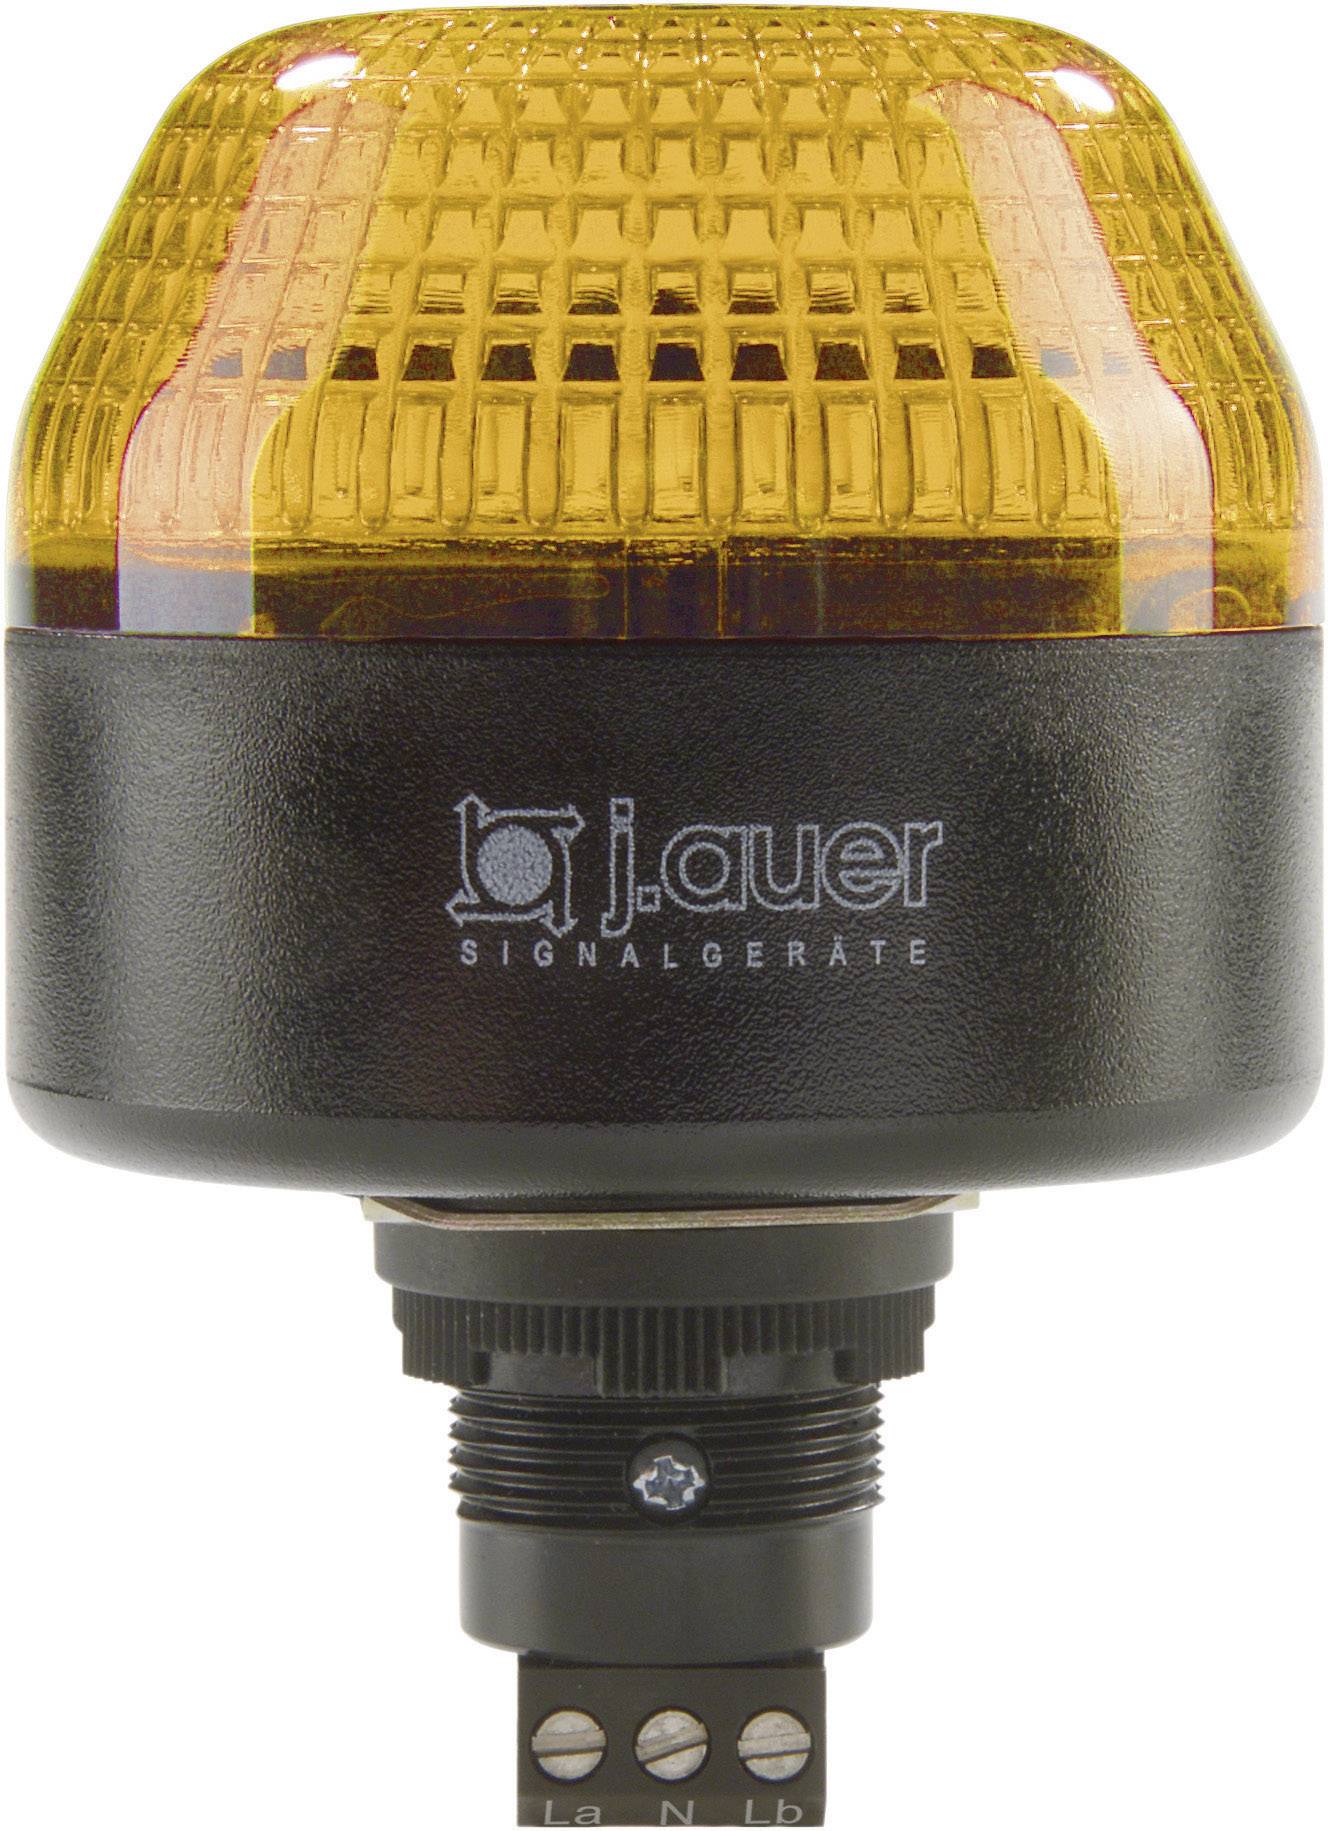 AUER SIGNAL Signalleuchte LED Auer Signalgeräte IBL Orange Dauerlicht, Blinklicht 24 V/DC, 24 V/AC